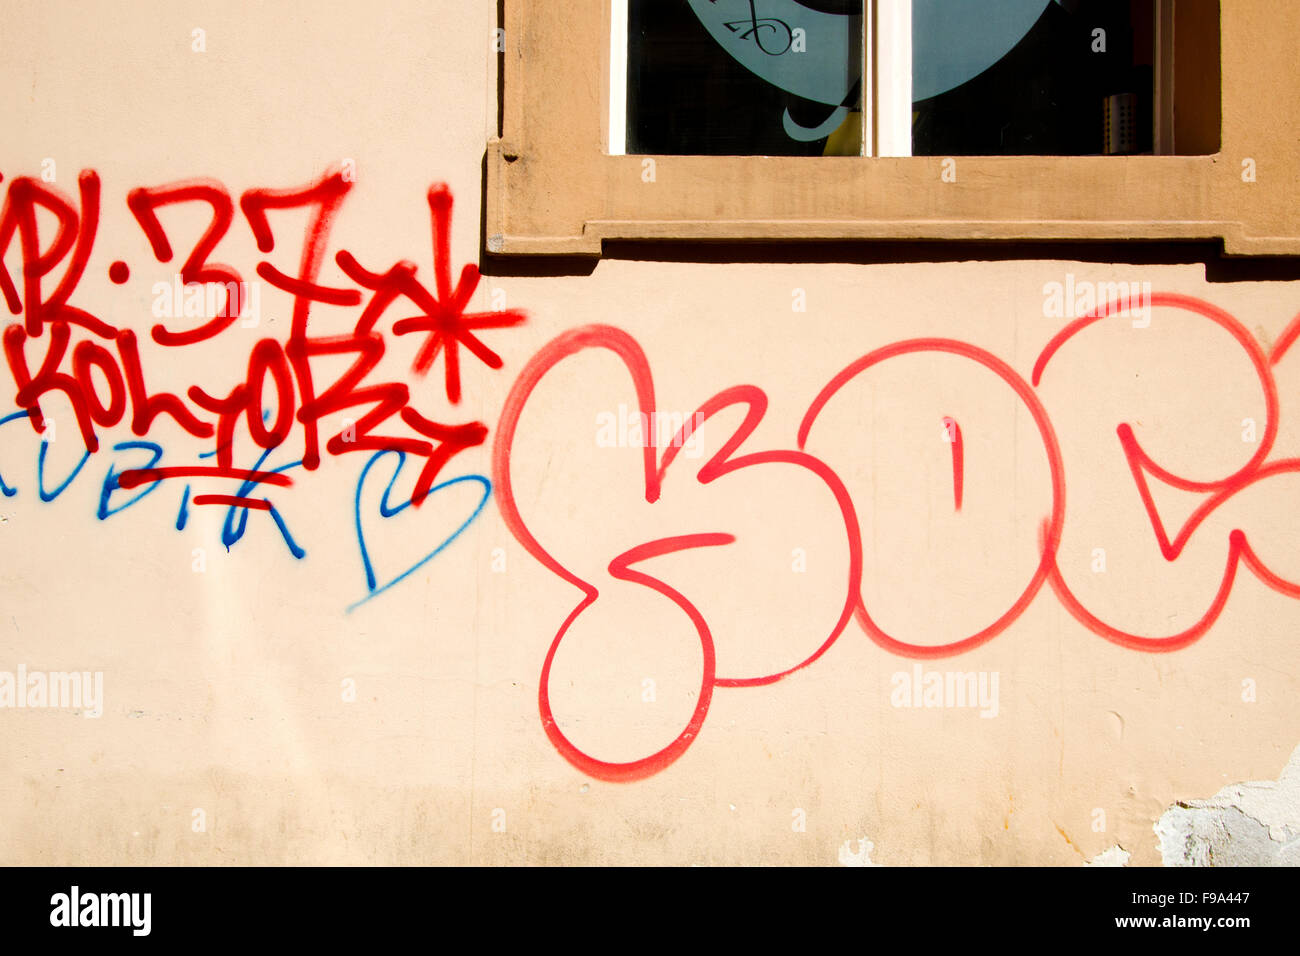 Graffiti rouge sur un mur avec une fenêtre Banque D'Images